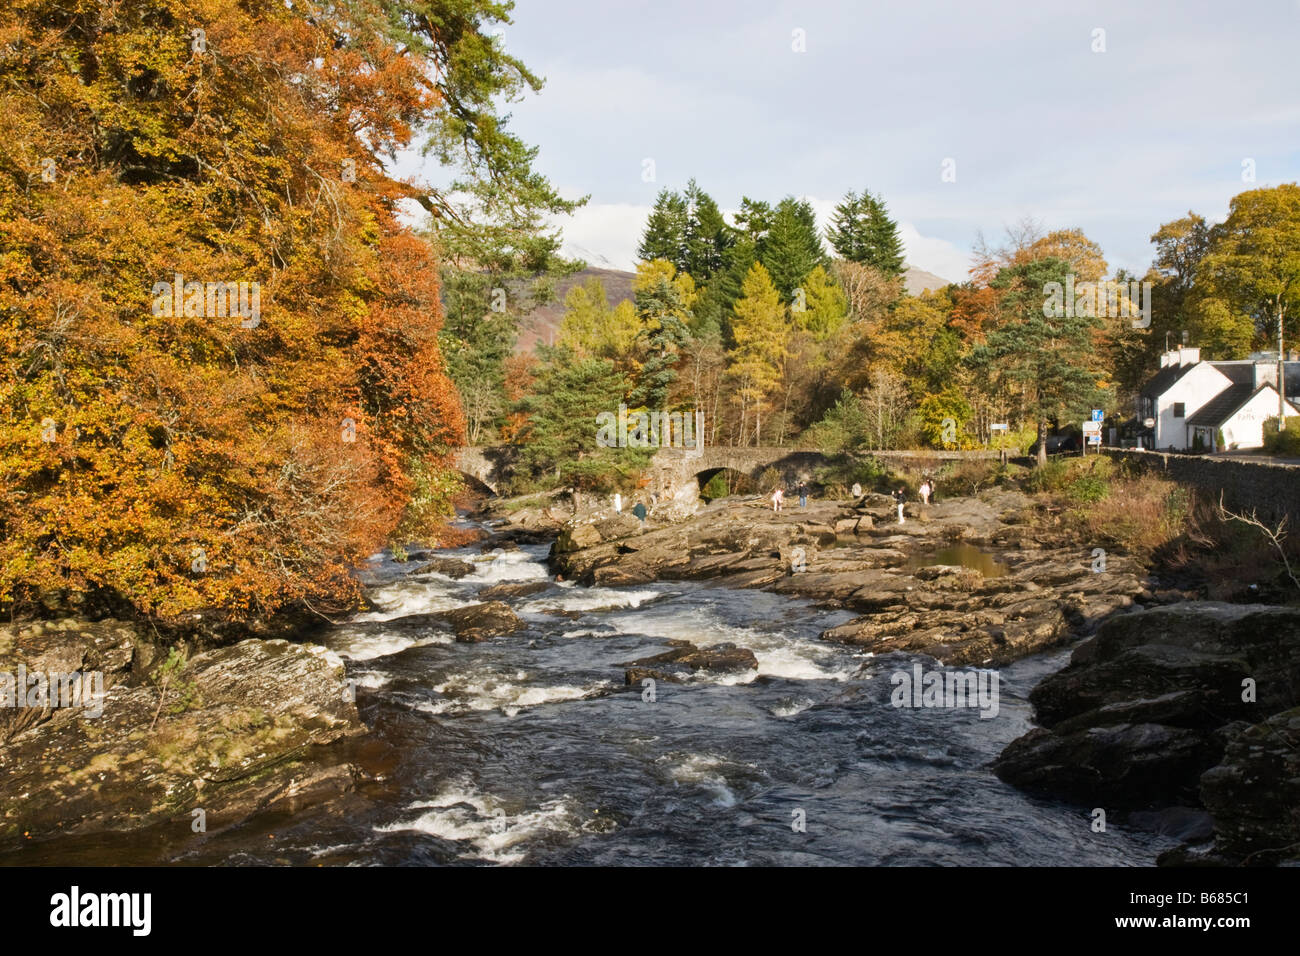 Falls of Dochart, Killin, Scotland Stock Photo